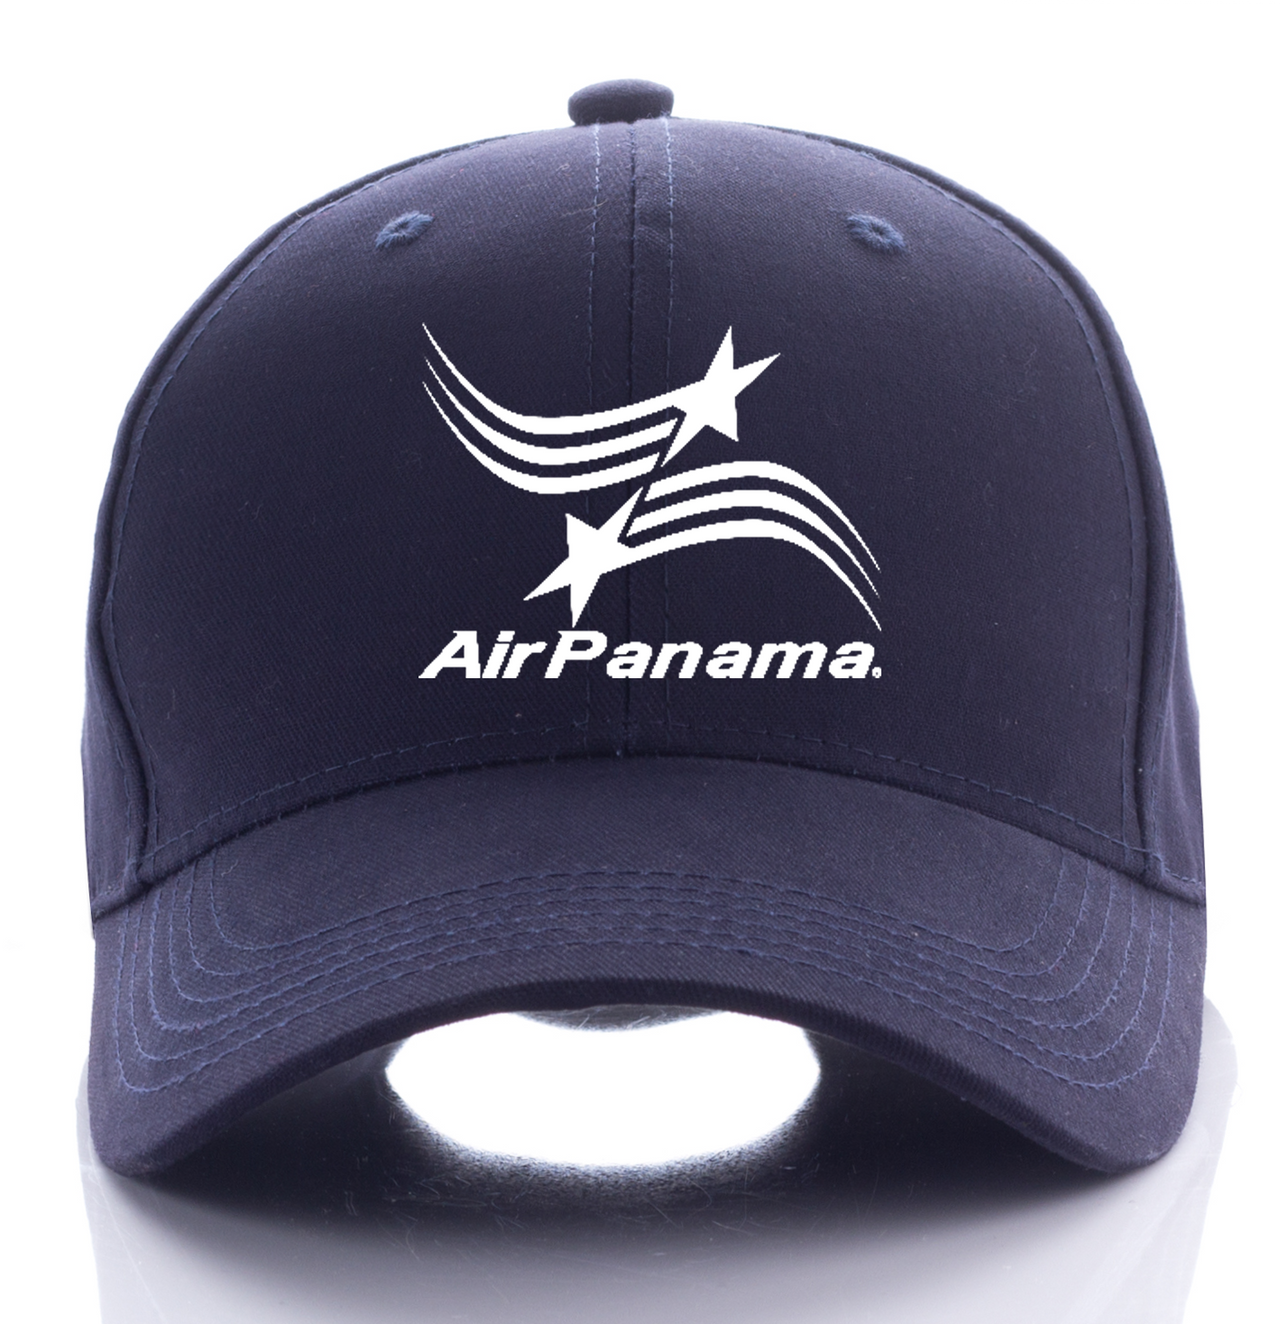 PANAMA AIRLINE DESIGNED CAP